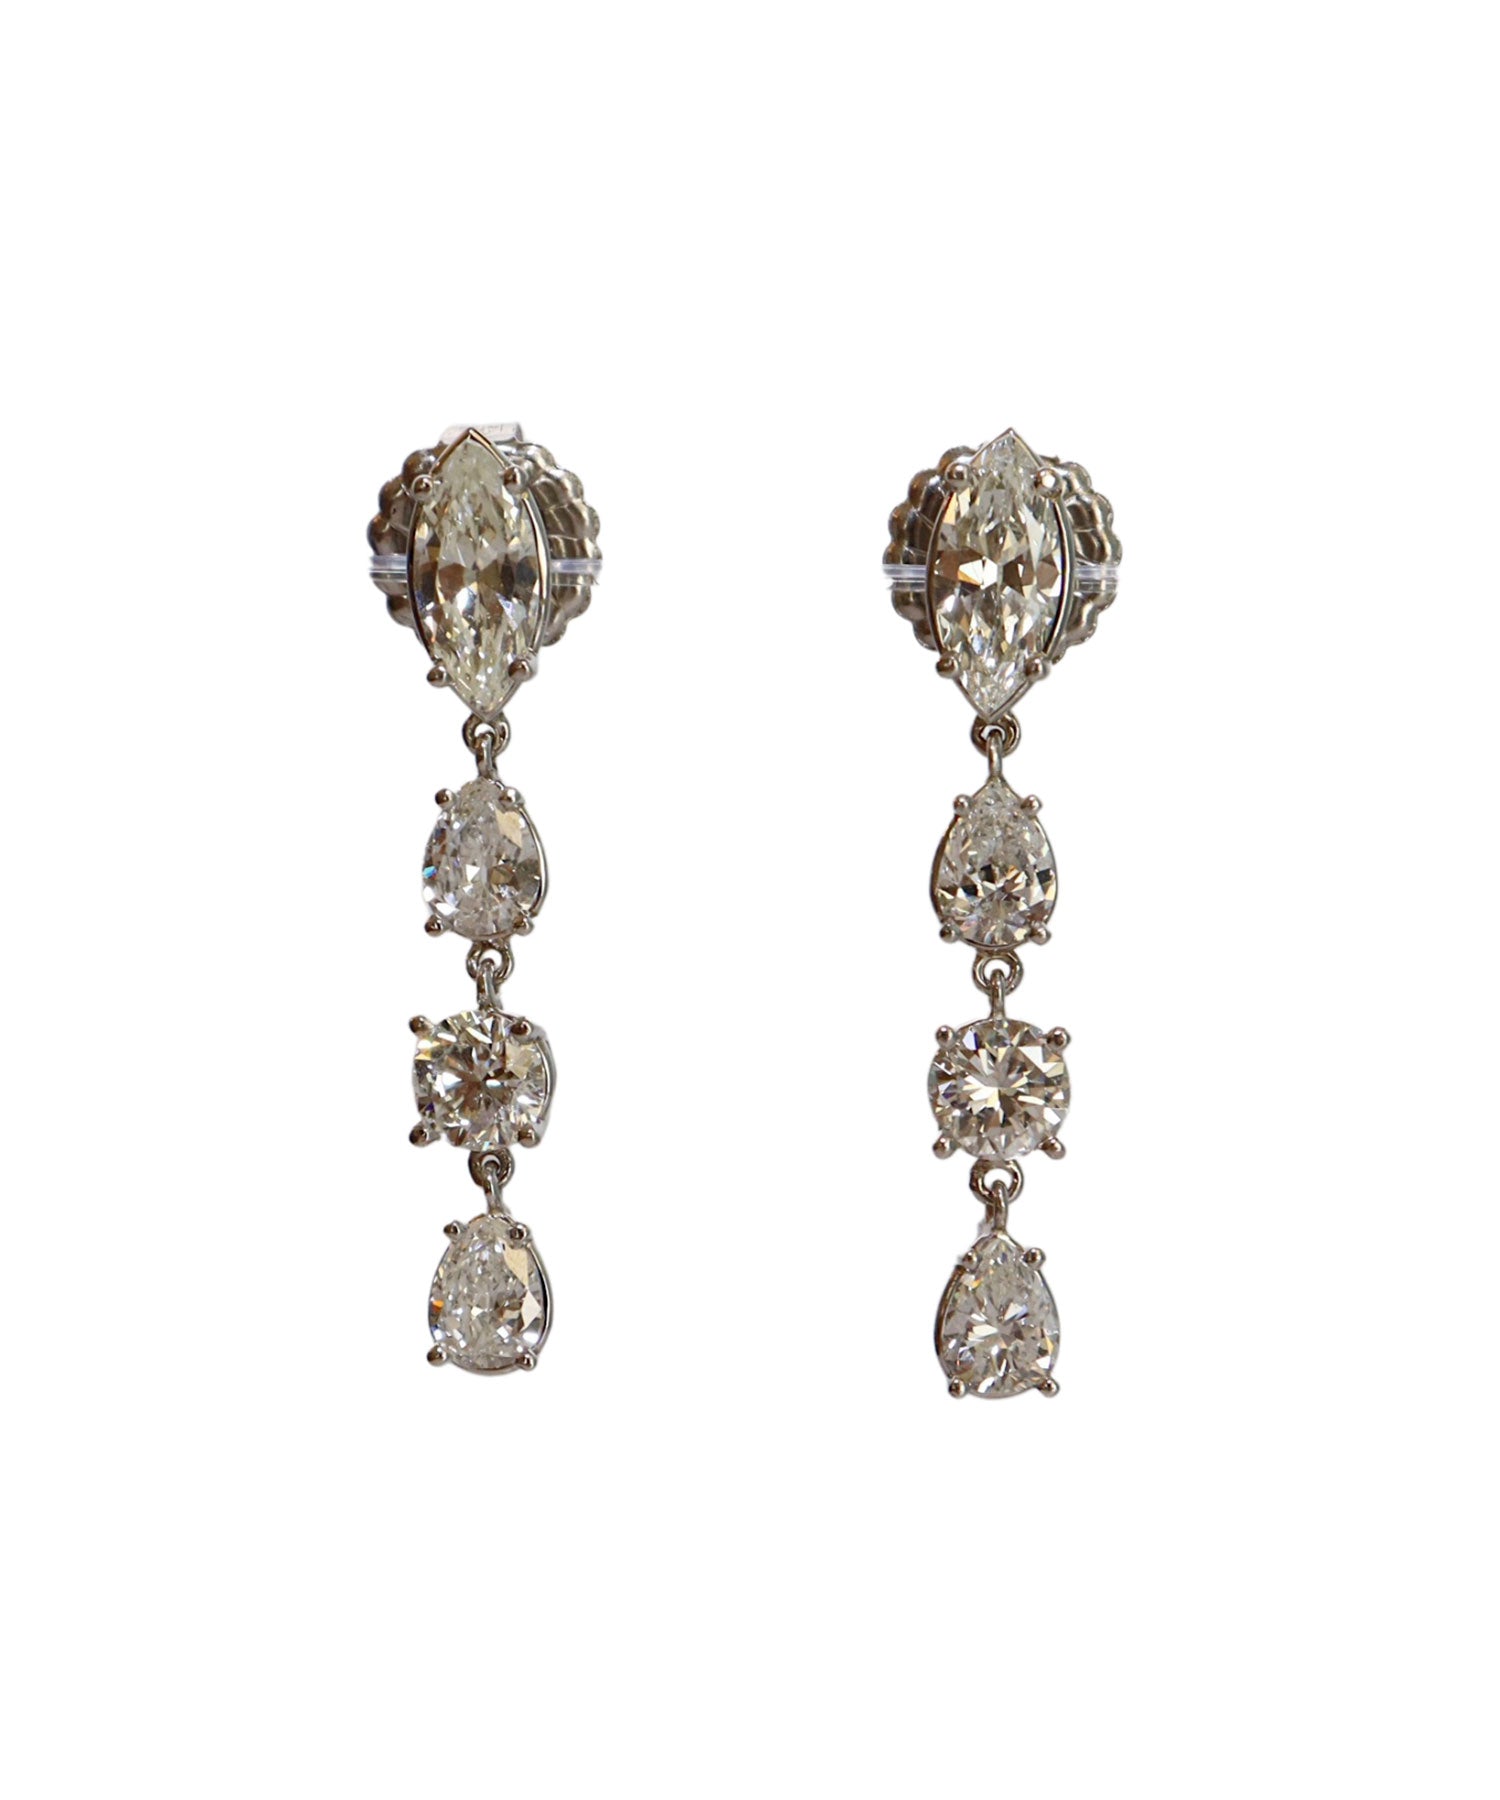 Custom earrings using diamonds